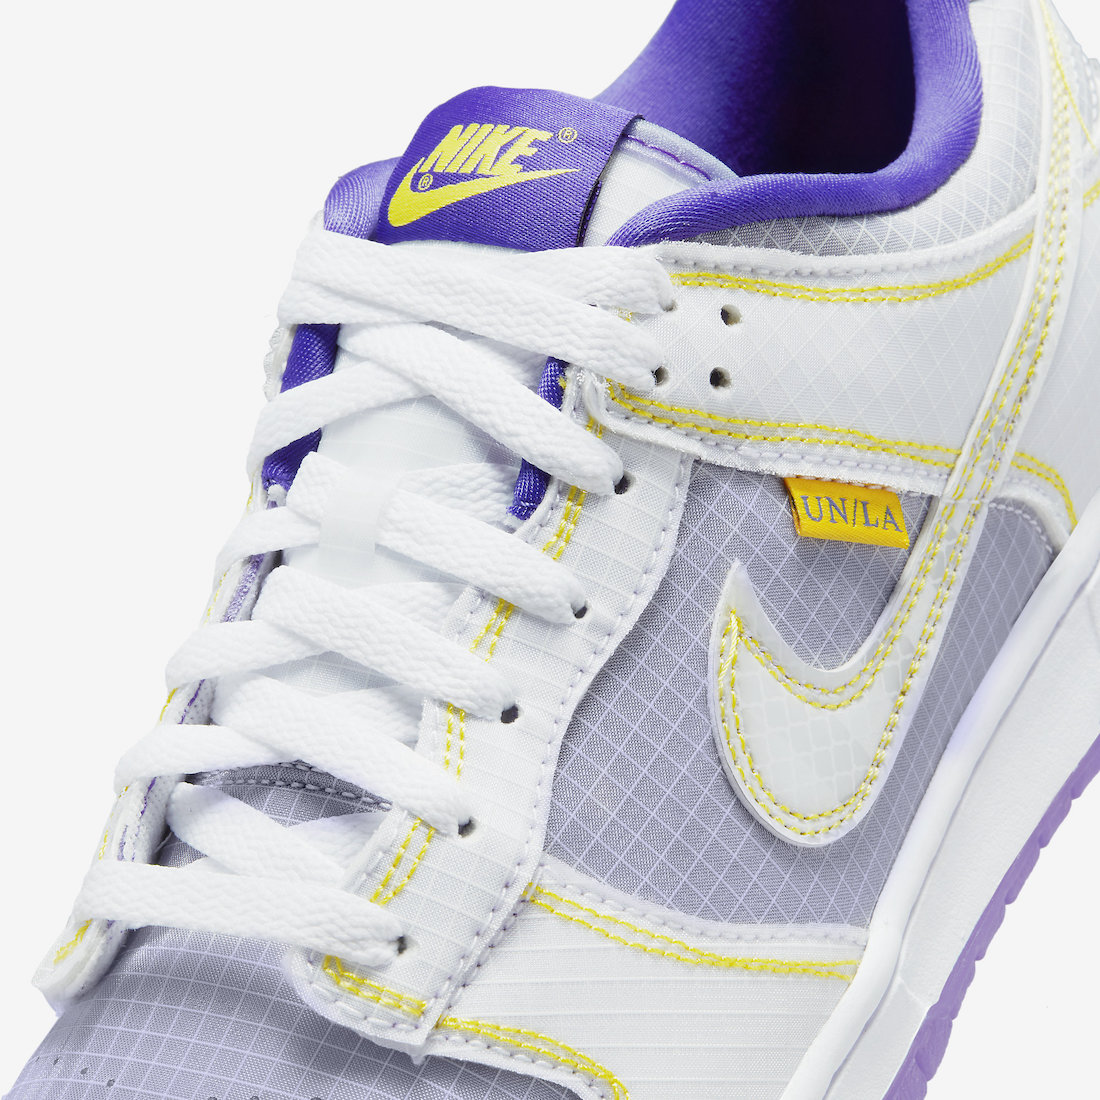 Union-Nike-Dunk-Low-Court-Purple-DJ9649-500-Release-Date-8